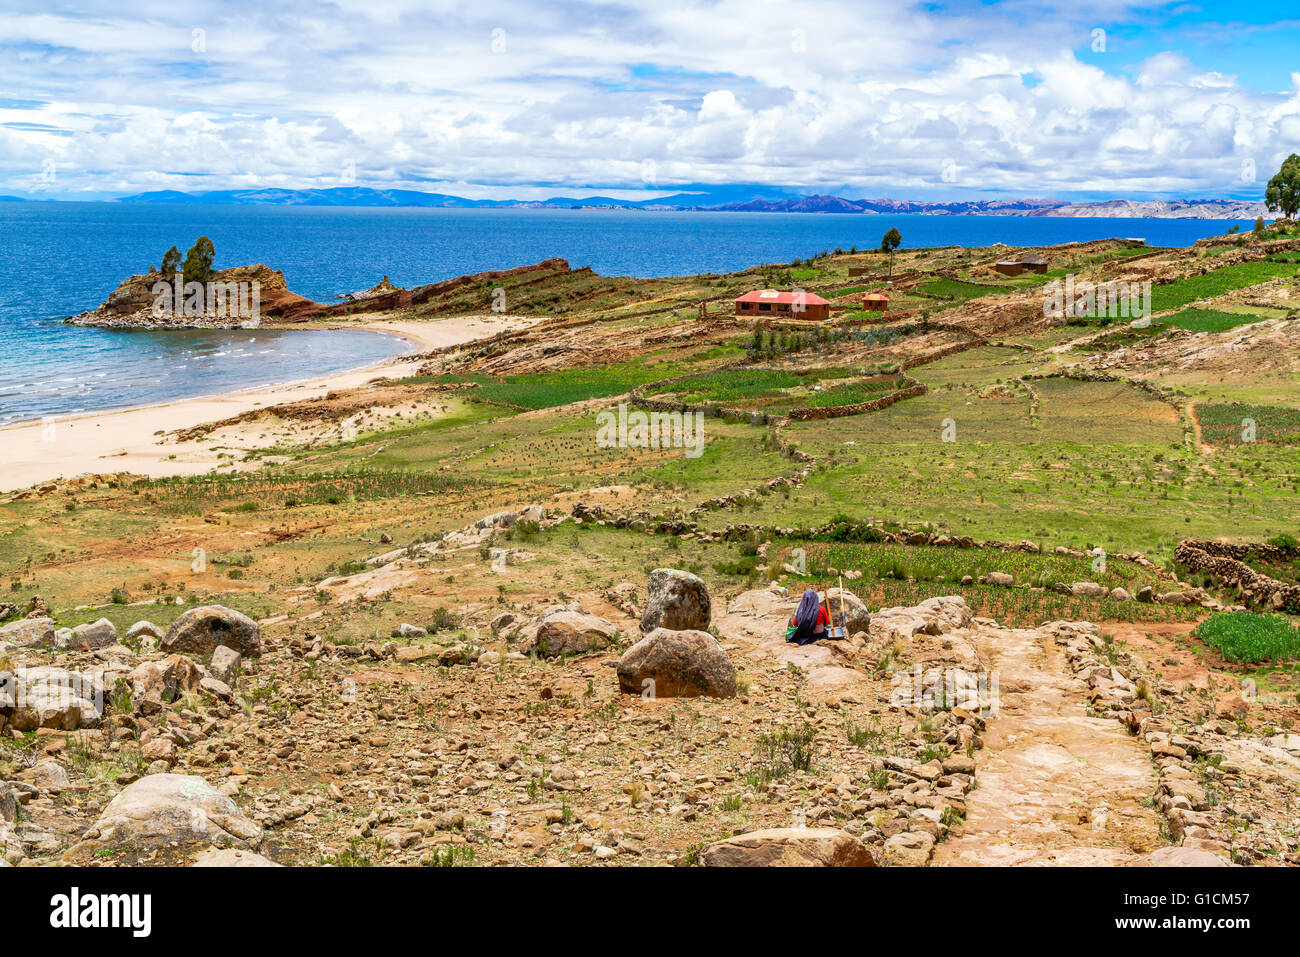 Paysage de l'île de Taquile sur le lac Titicaca, près de ville de Puno, Pérou Banque D'Images